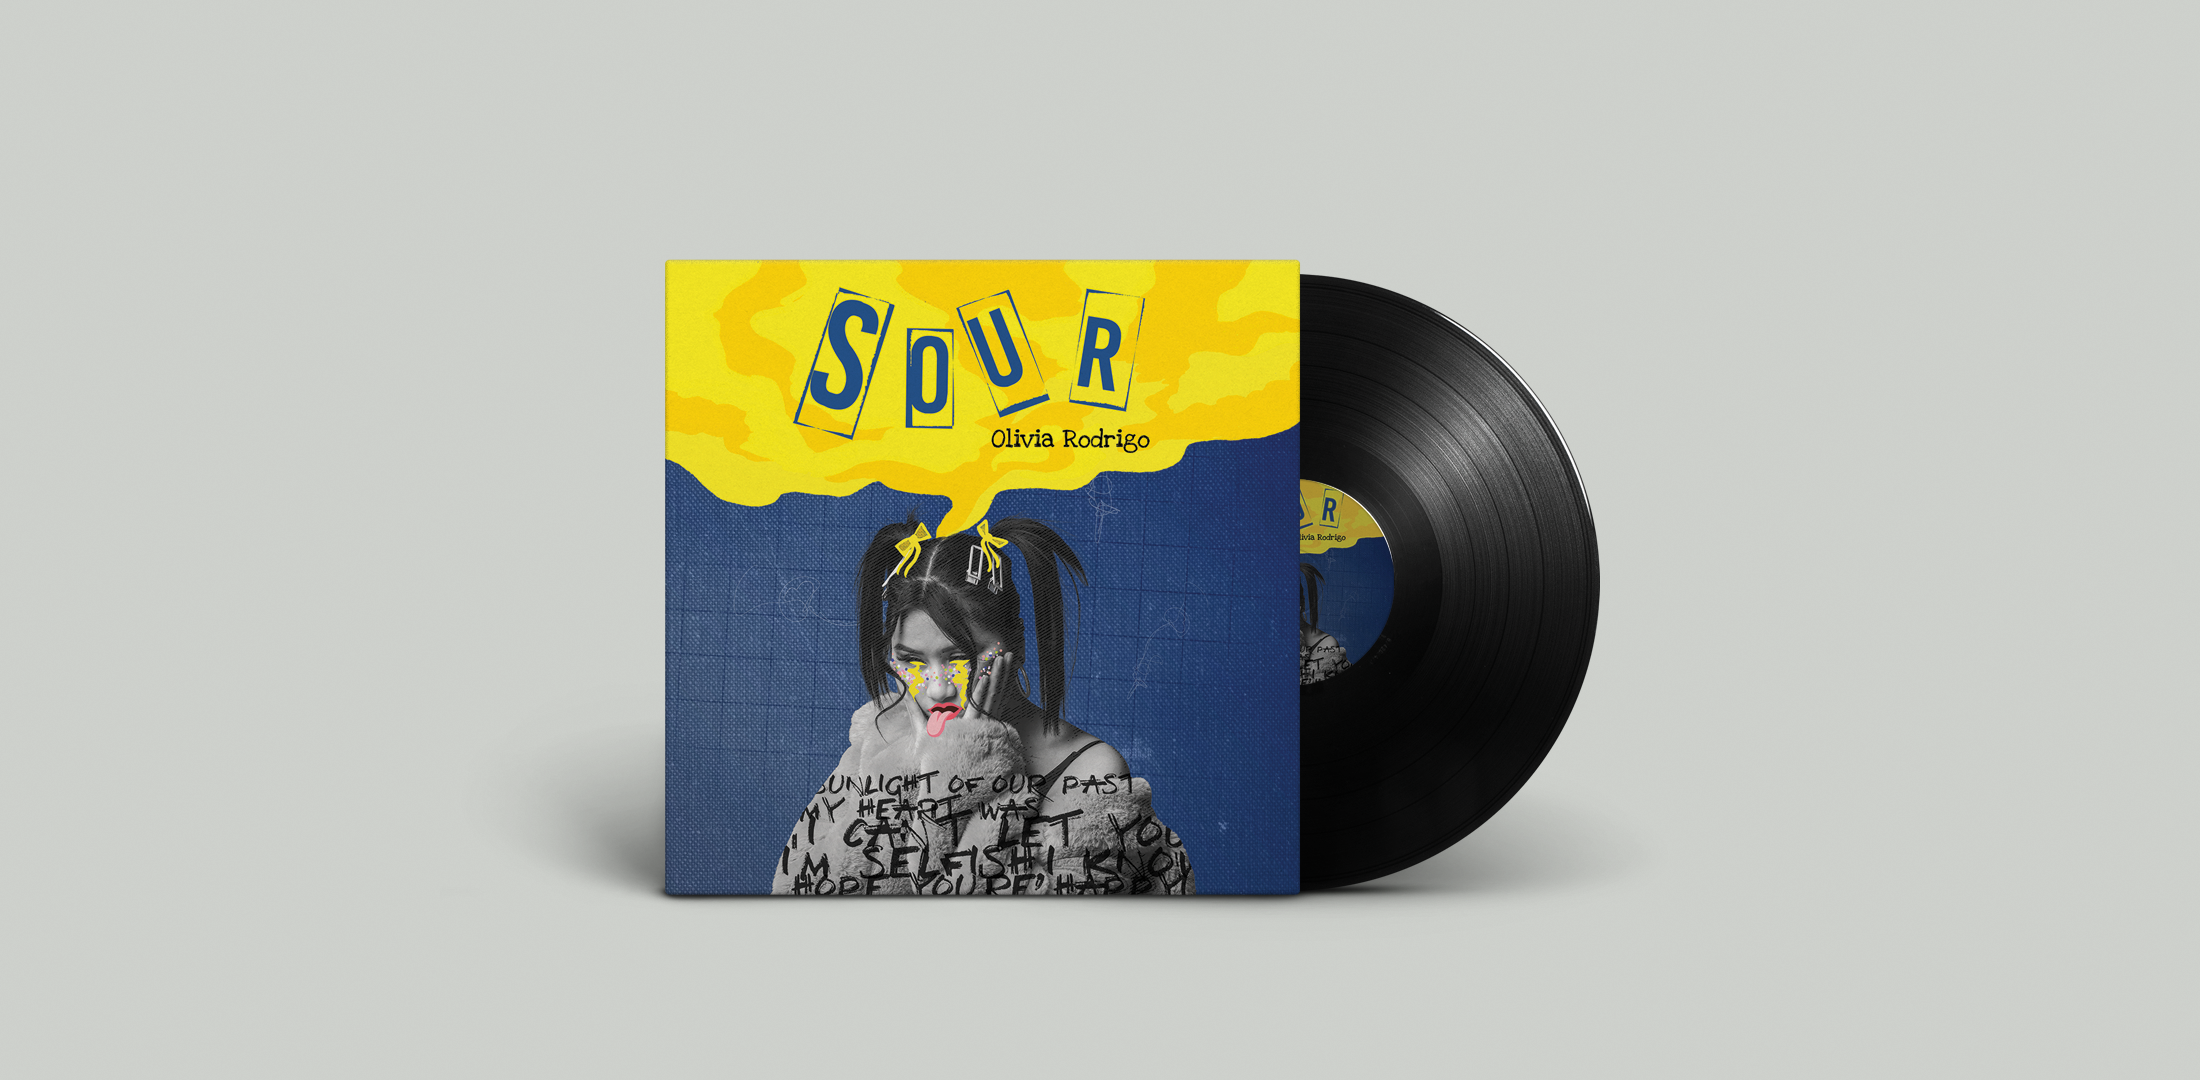 Sour - Illustrative Album Cover 1